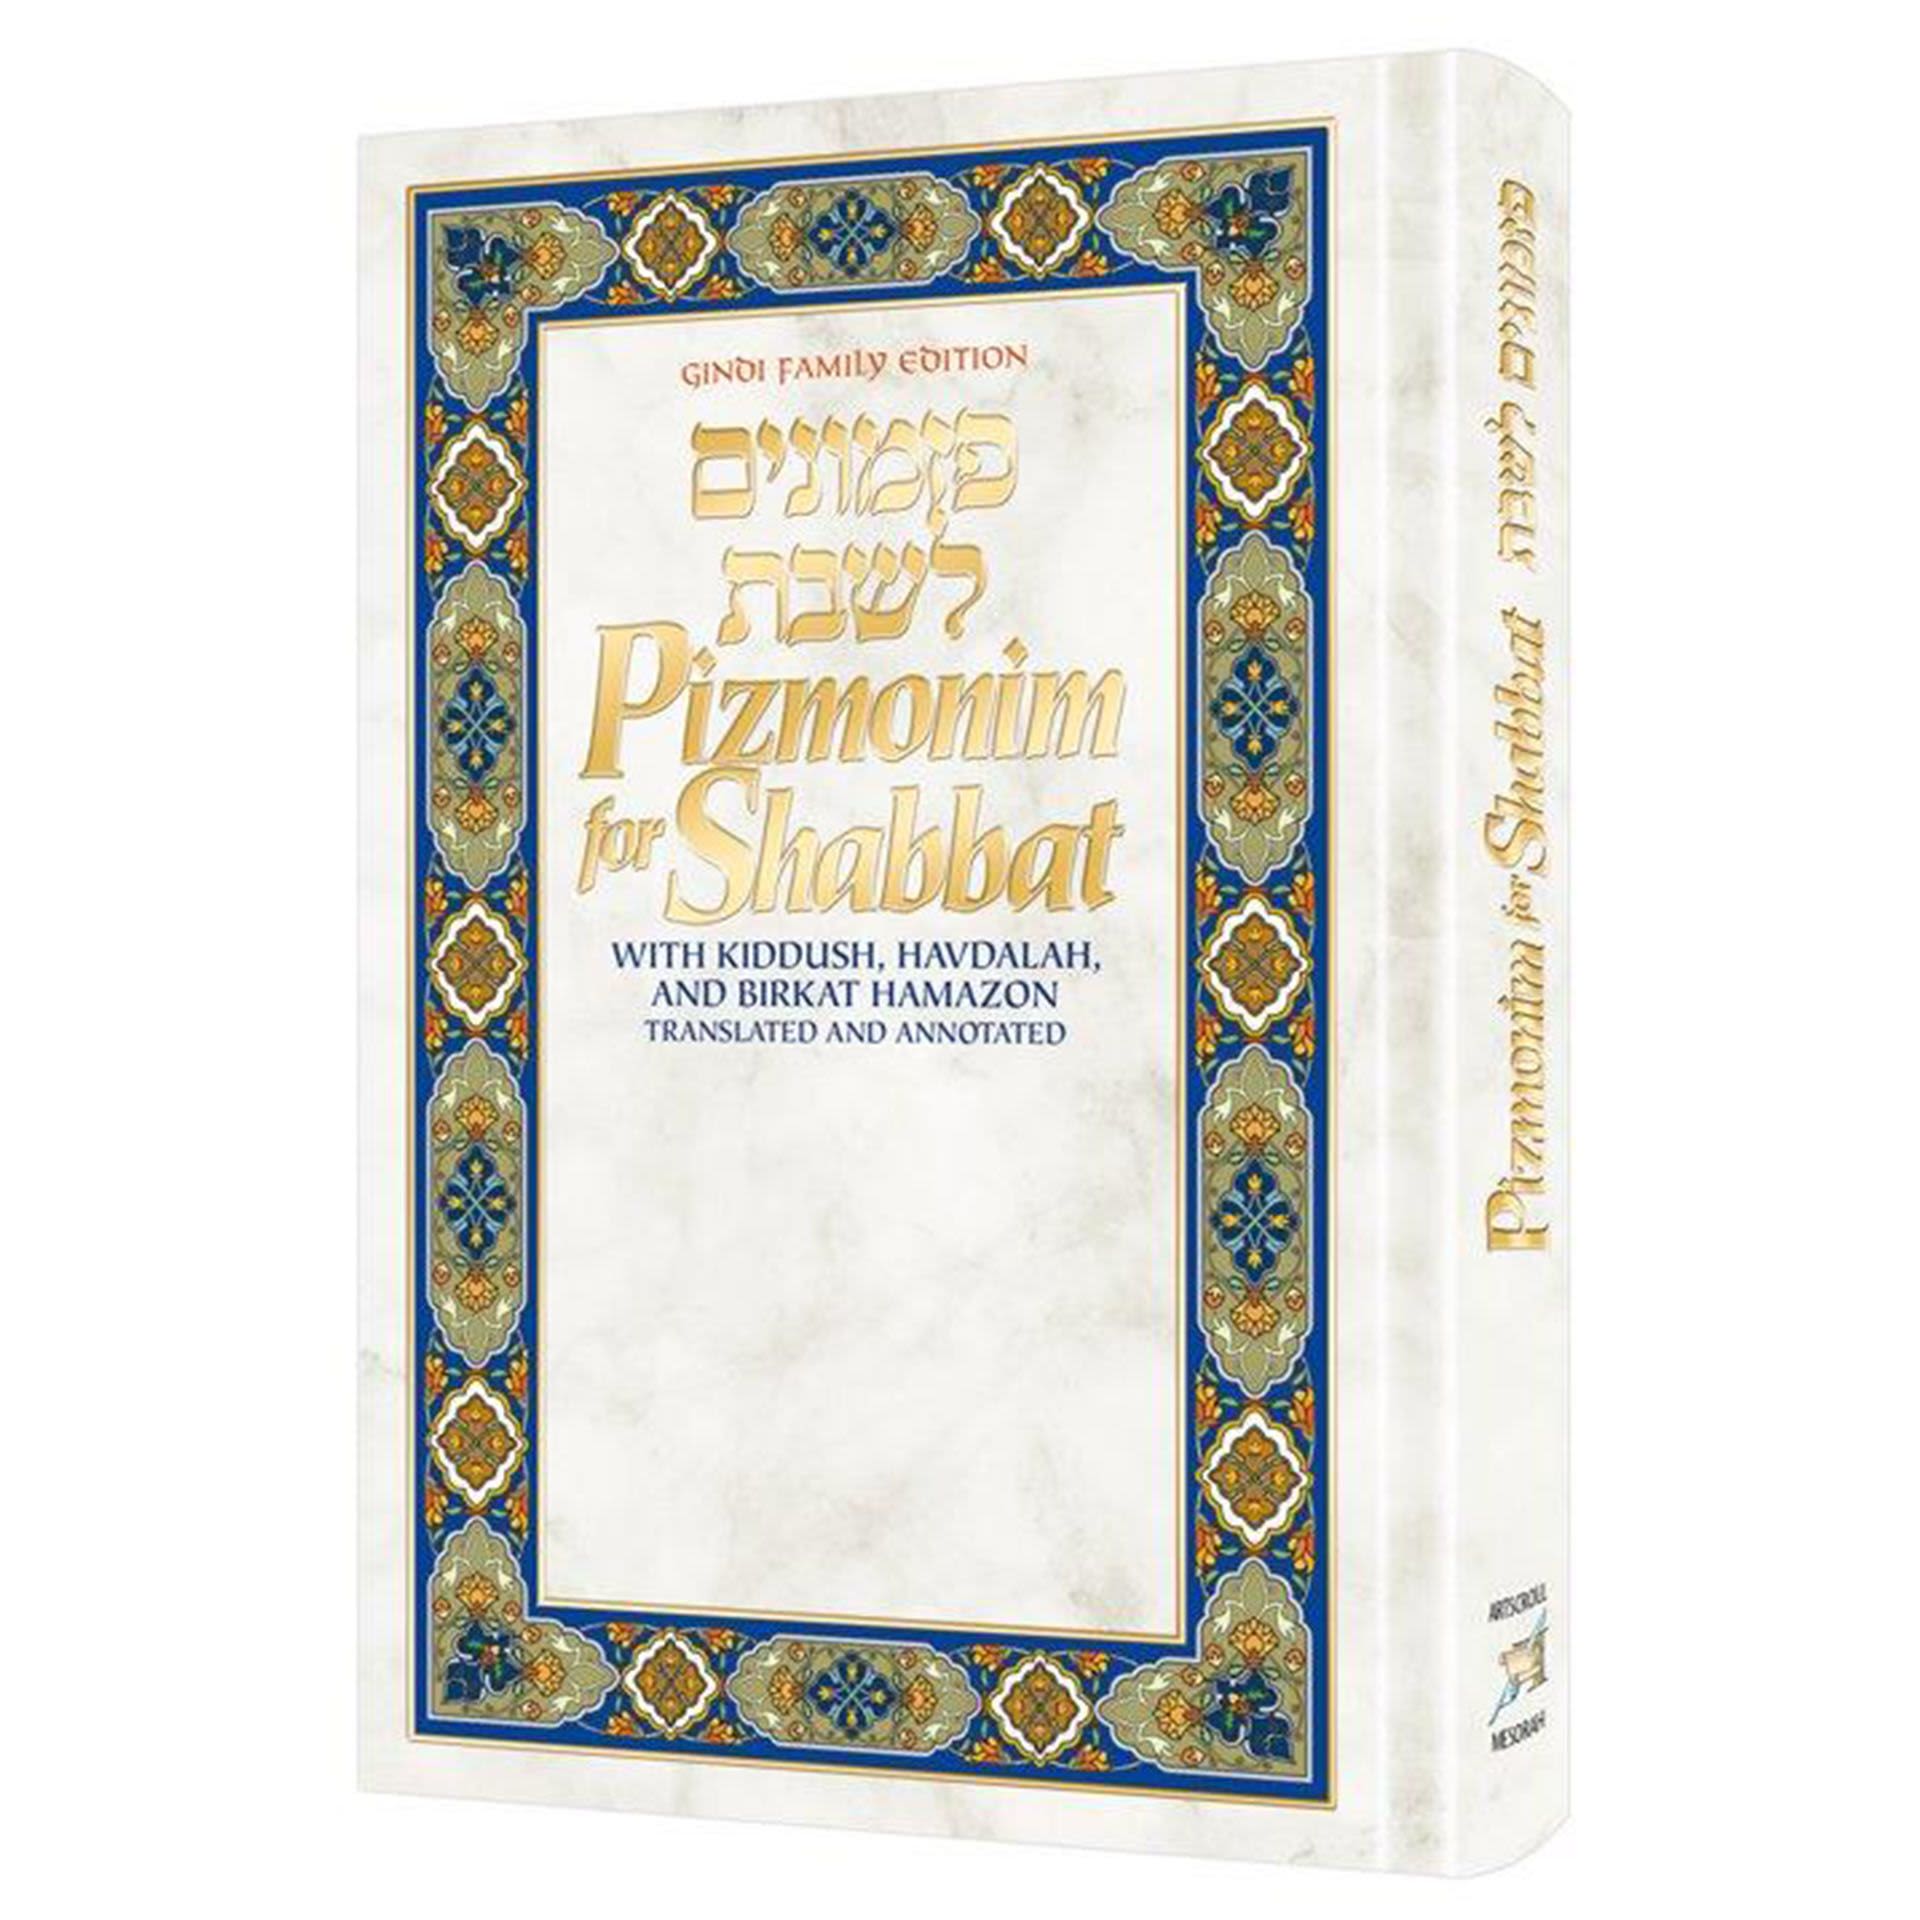 Pizmonim for Shabbat - With Kiddush, Havdalah, and Birkat HaMazon